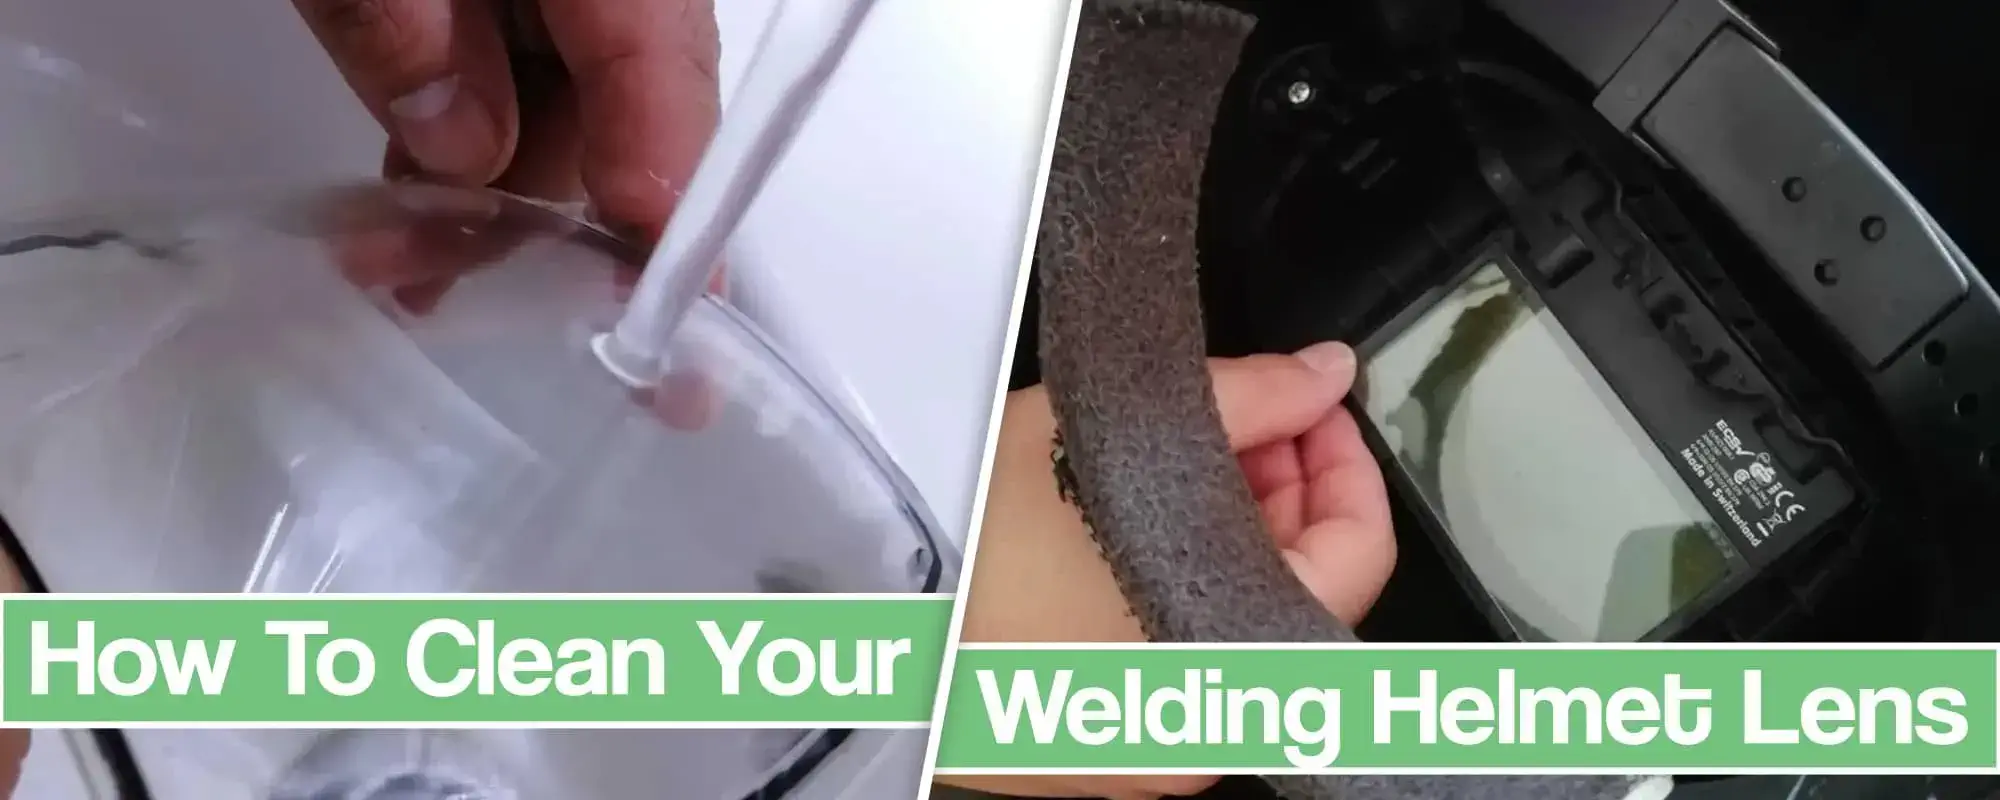 How To Clean Your Welding Helmet Lens?